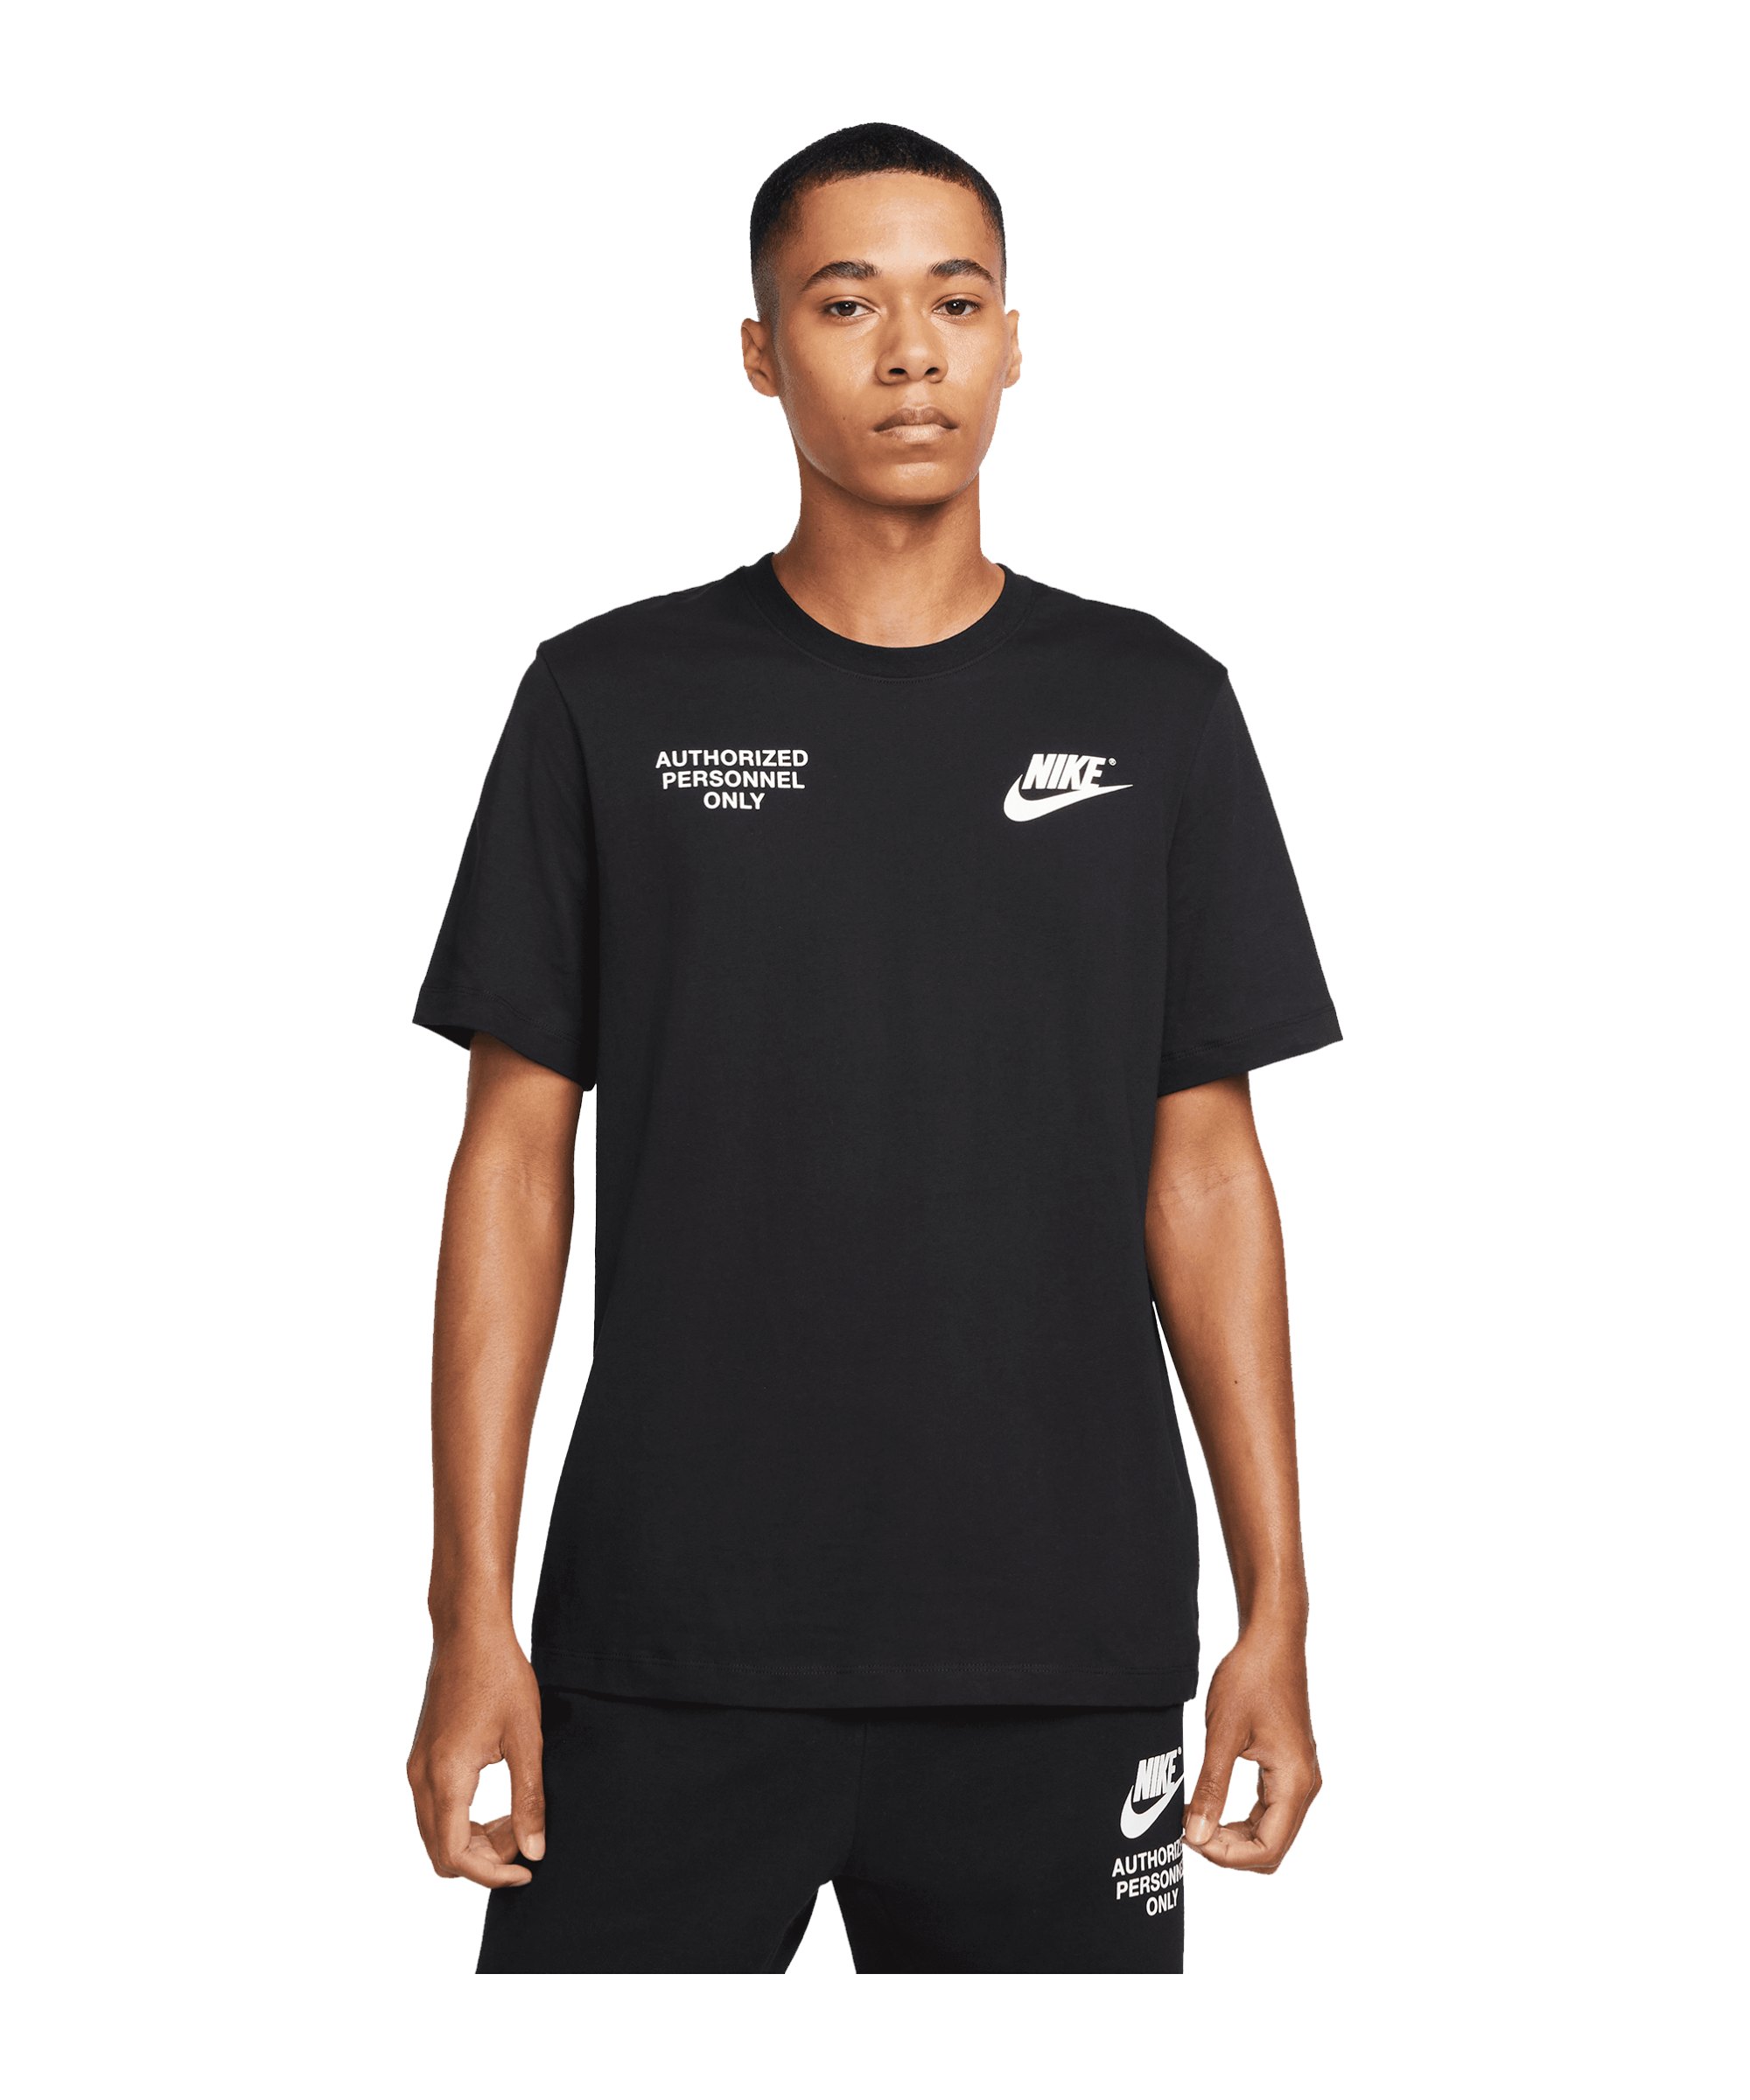 Nike Authorized Personnel T-Shirt Schwarz F010 - schwarz